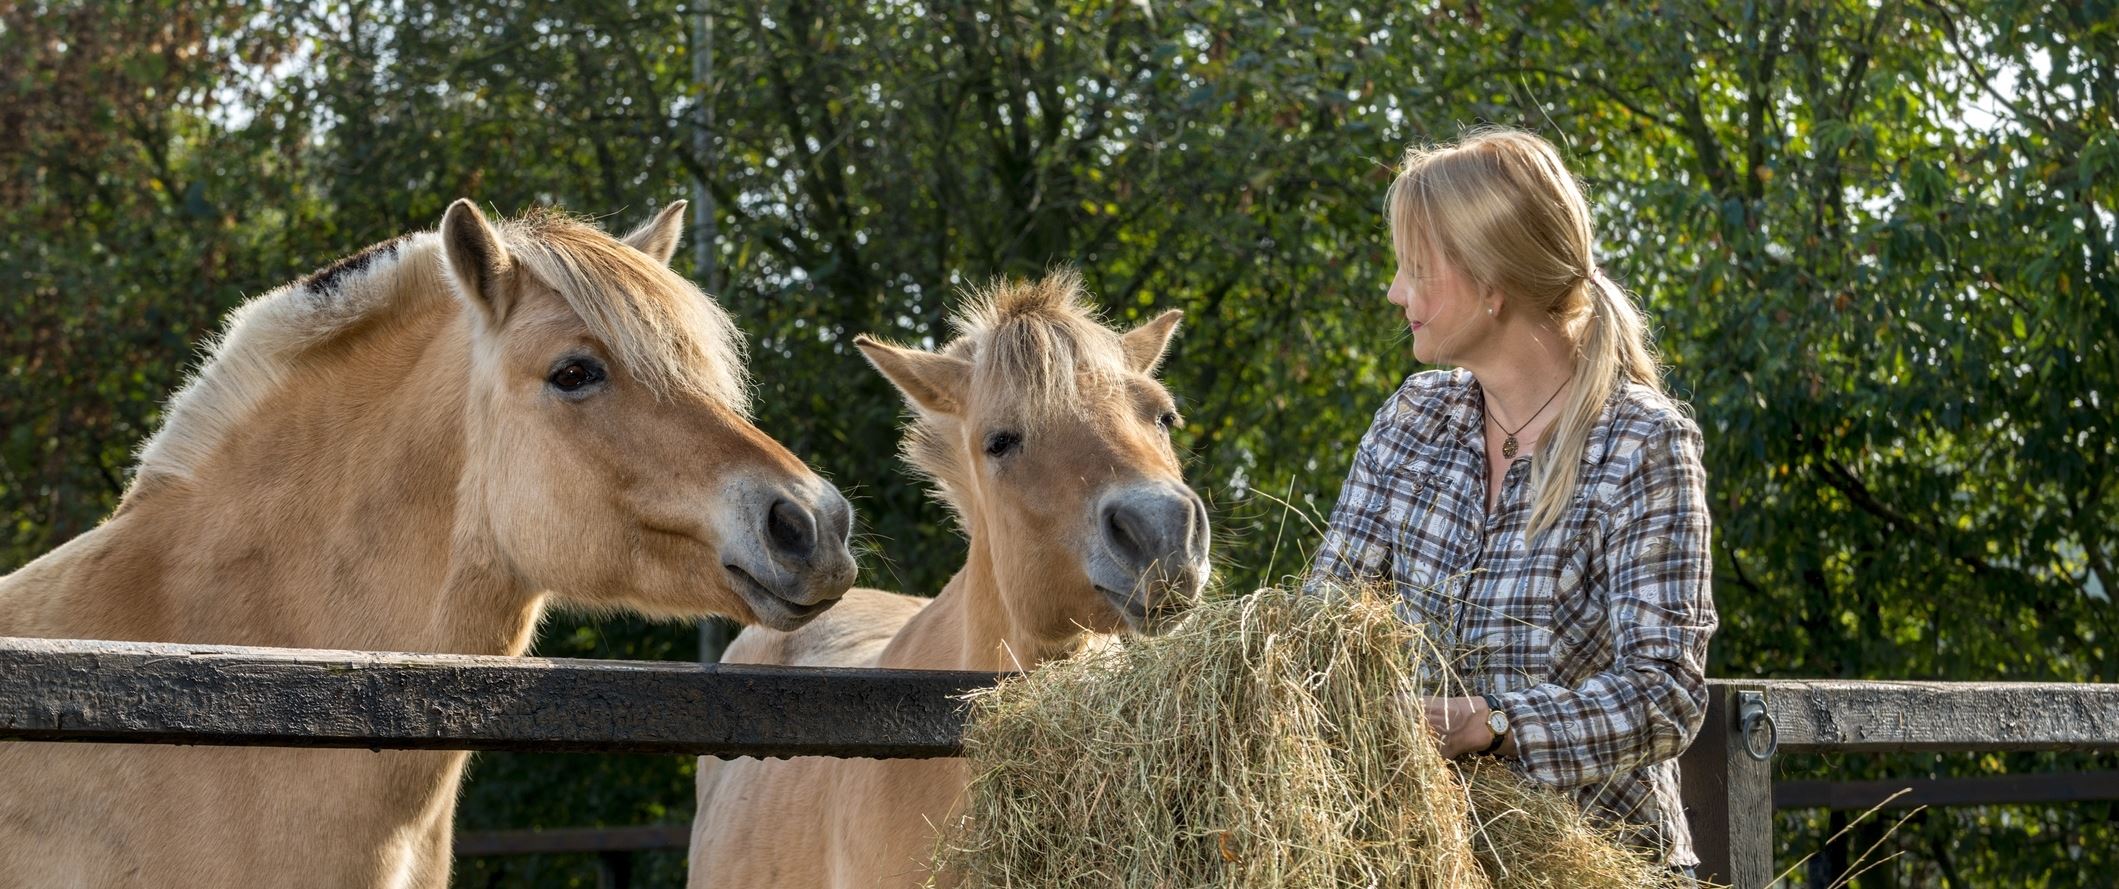 Foder til heste forhandles til kunder i Haslev og Faxe